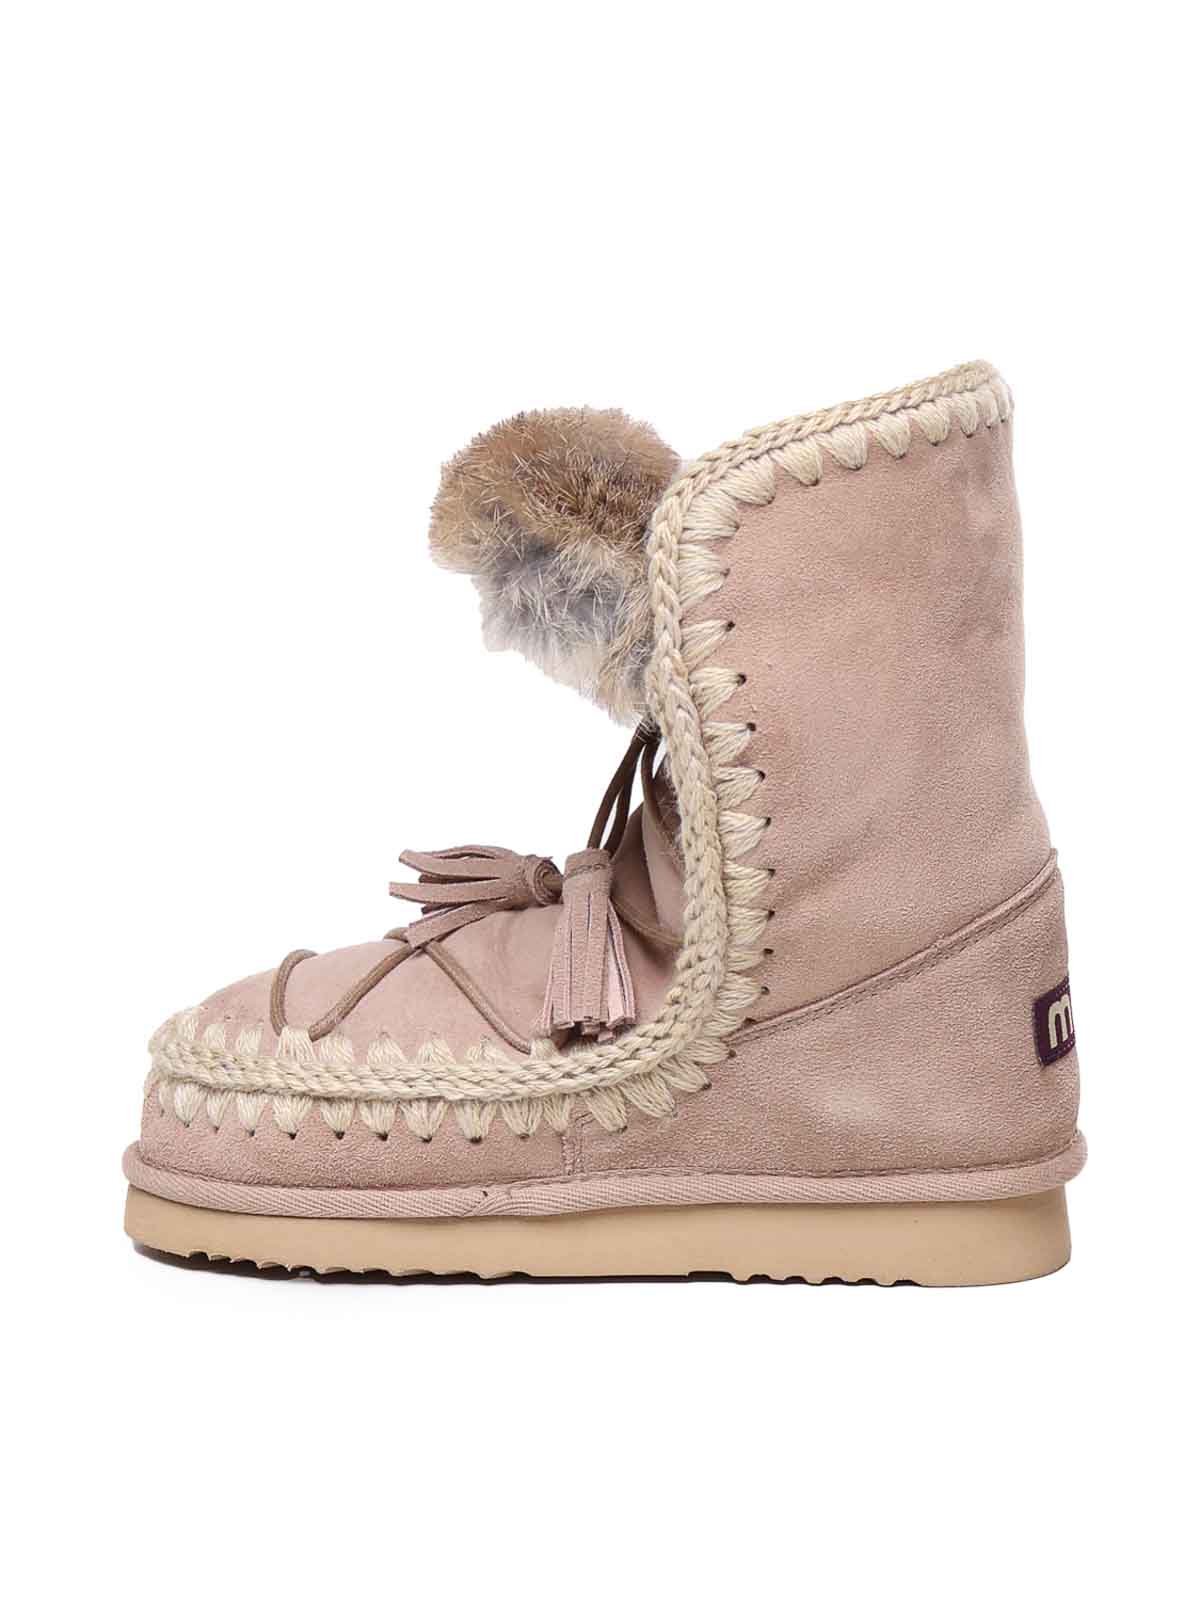 Shop Mou Eskimo Boots In Beige